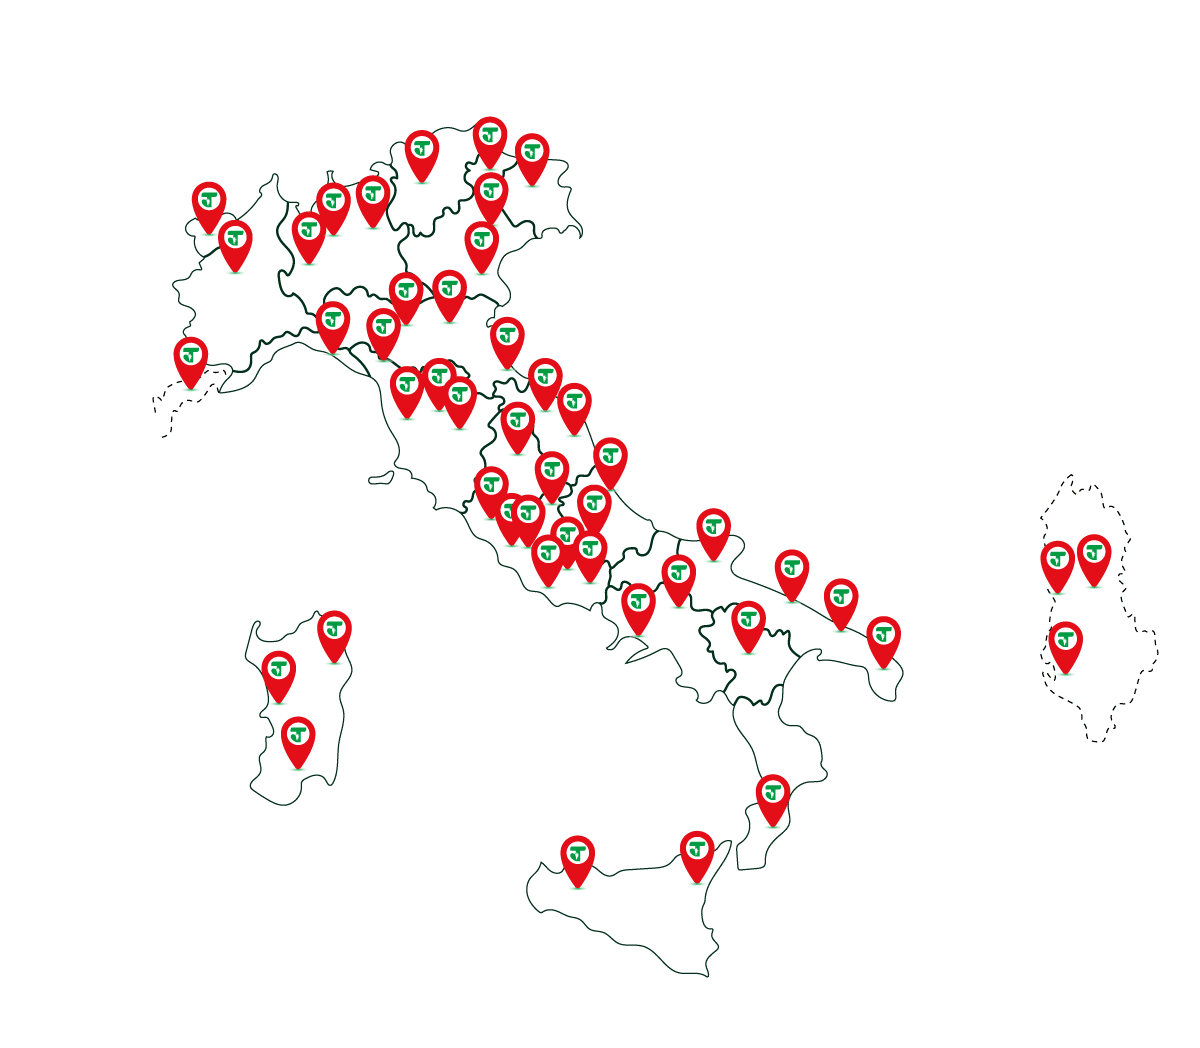 Tailorsan noleggio bagni chimici con rete concessionari in tutta italia e pulizia certificata